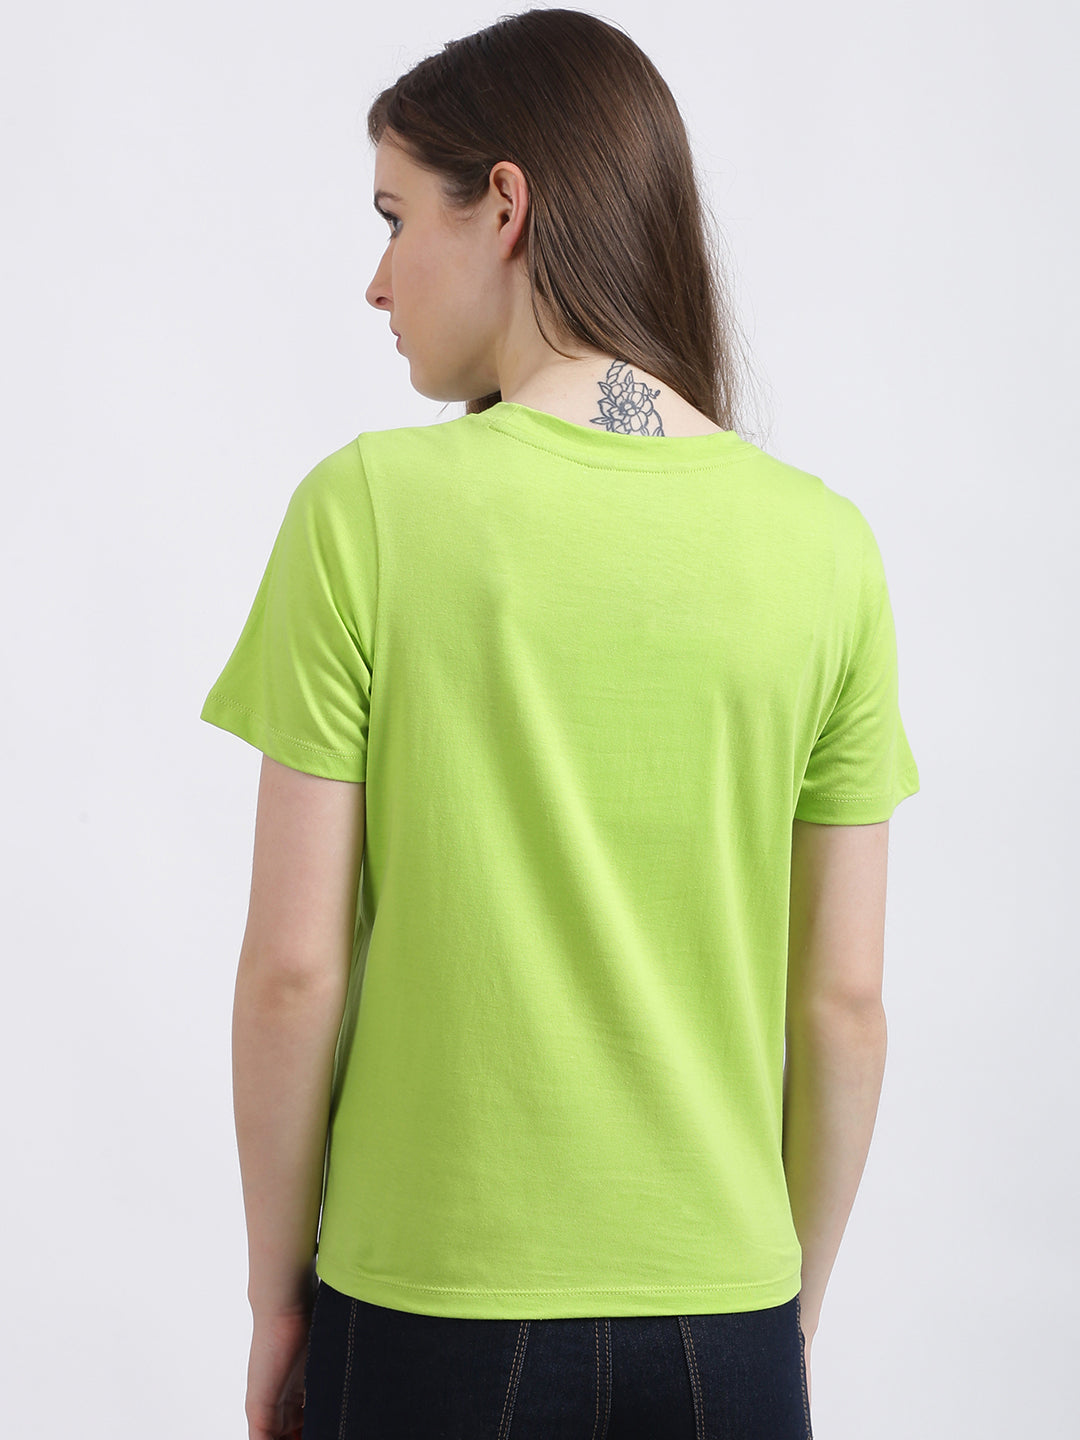 Green Solid Regular T-Shirt for Women